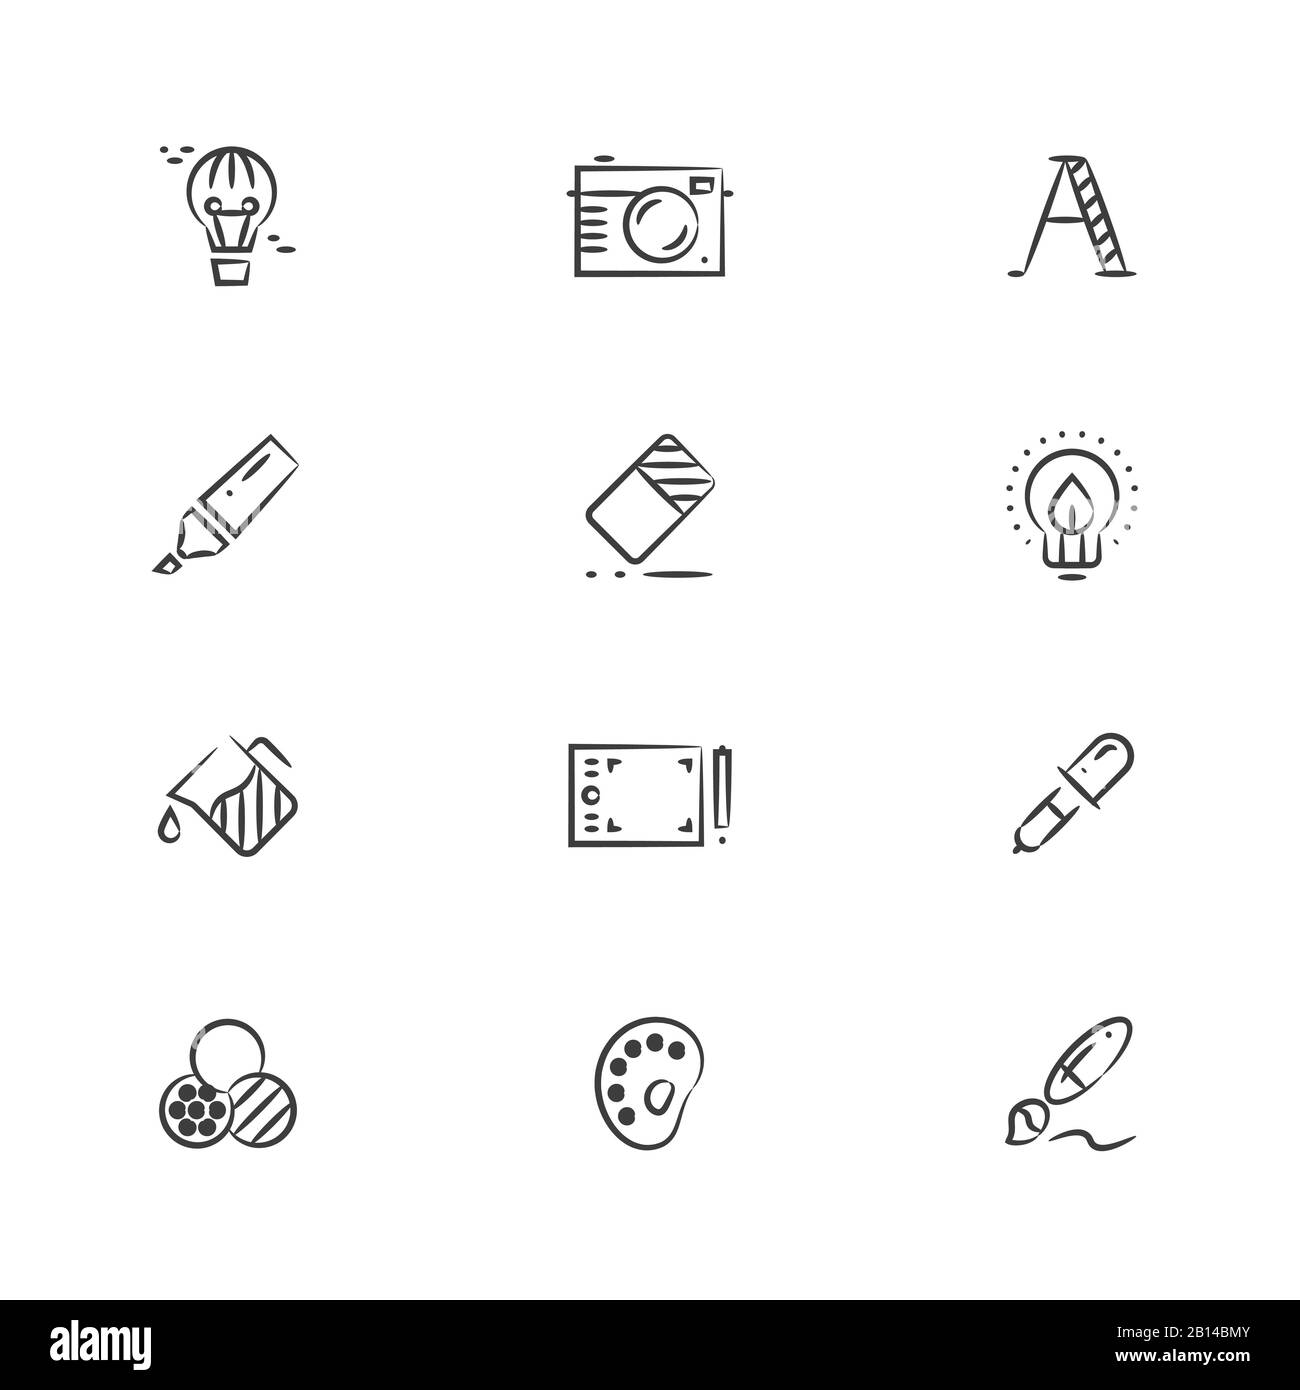 Icone della linea degli strumenti di progettazione grafica e creativa. Strumenti di disegno, contorno, illustrazione vettoriale Illustrazione Vettoriale